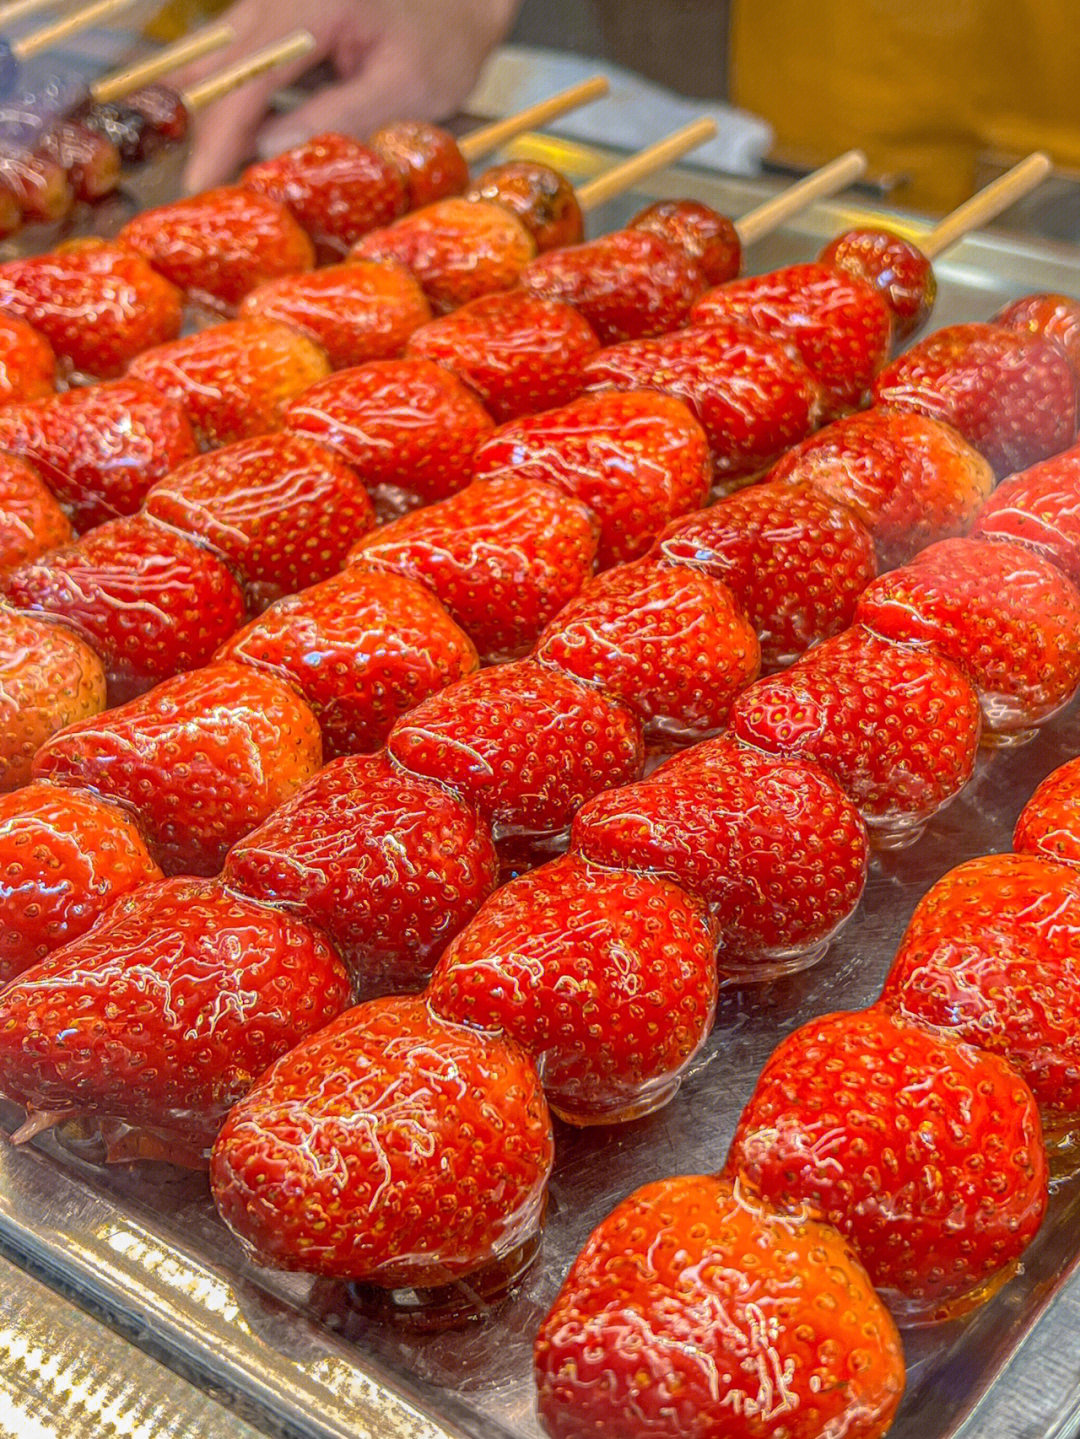 秋天总要吃一次甜滋滋的草莓冰糖葫芦吧